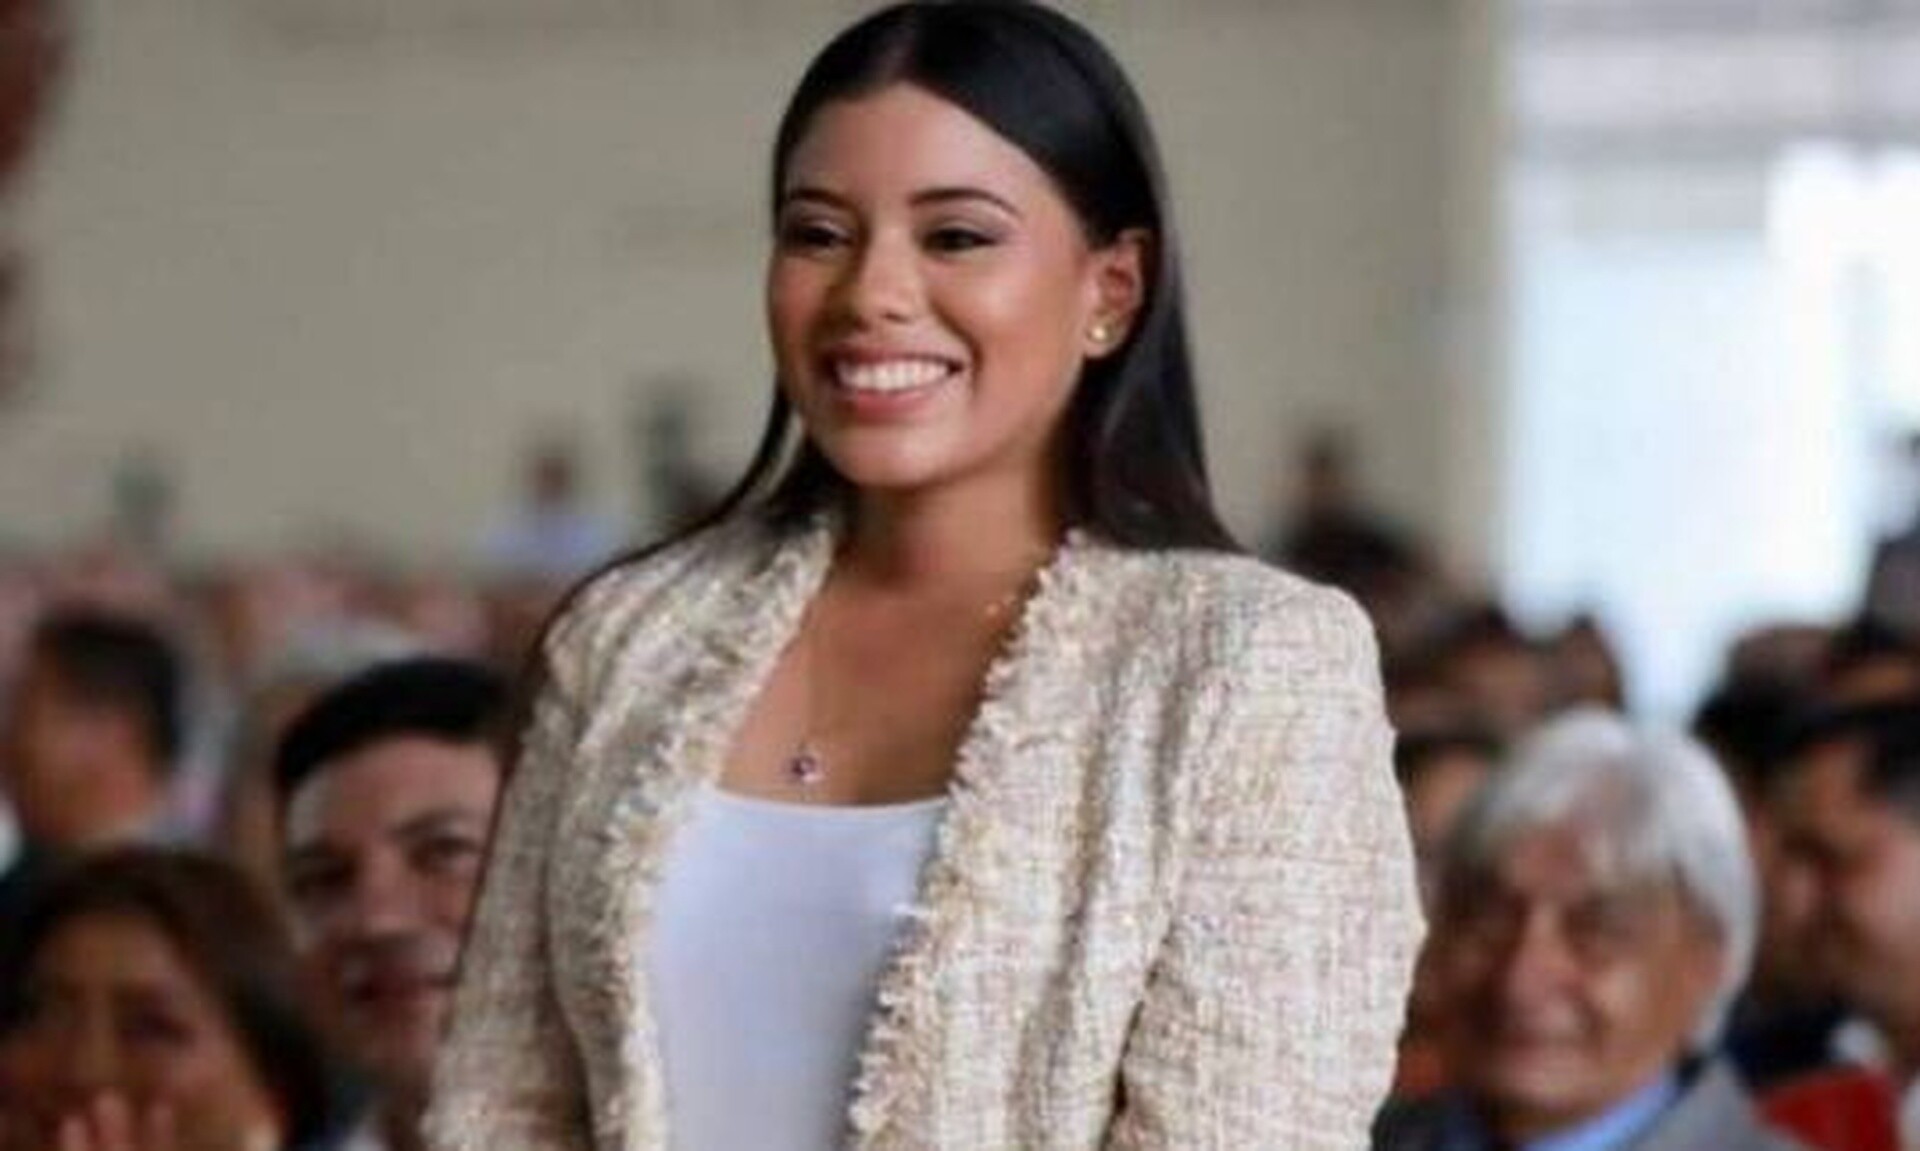 Ισημερινός: Δολοφονήθηκε στα 27 της η νεότερη δήμαρχος της χώρας - Νεκρός και ο βοηθός της